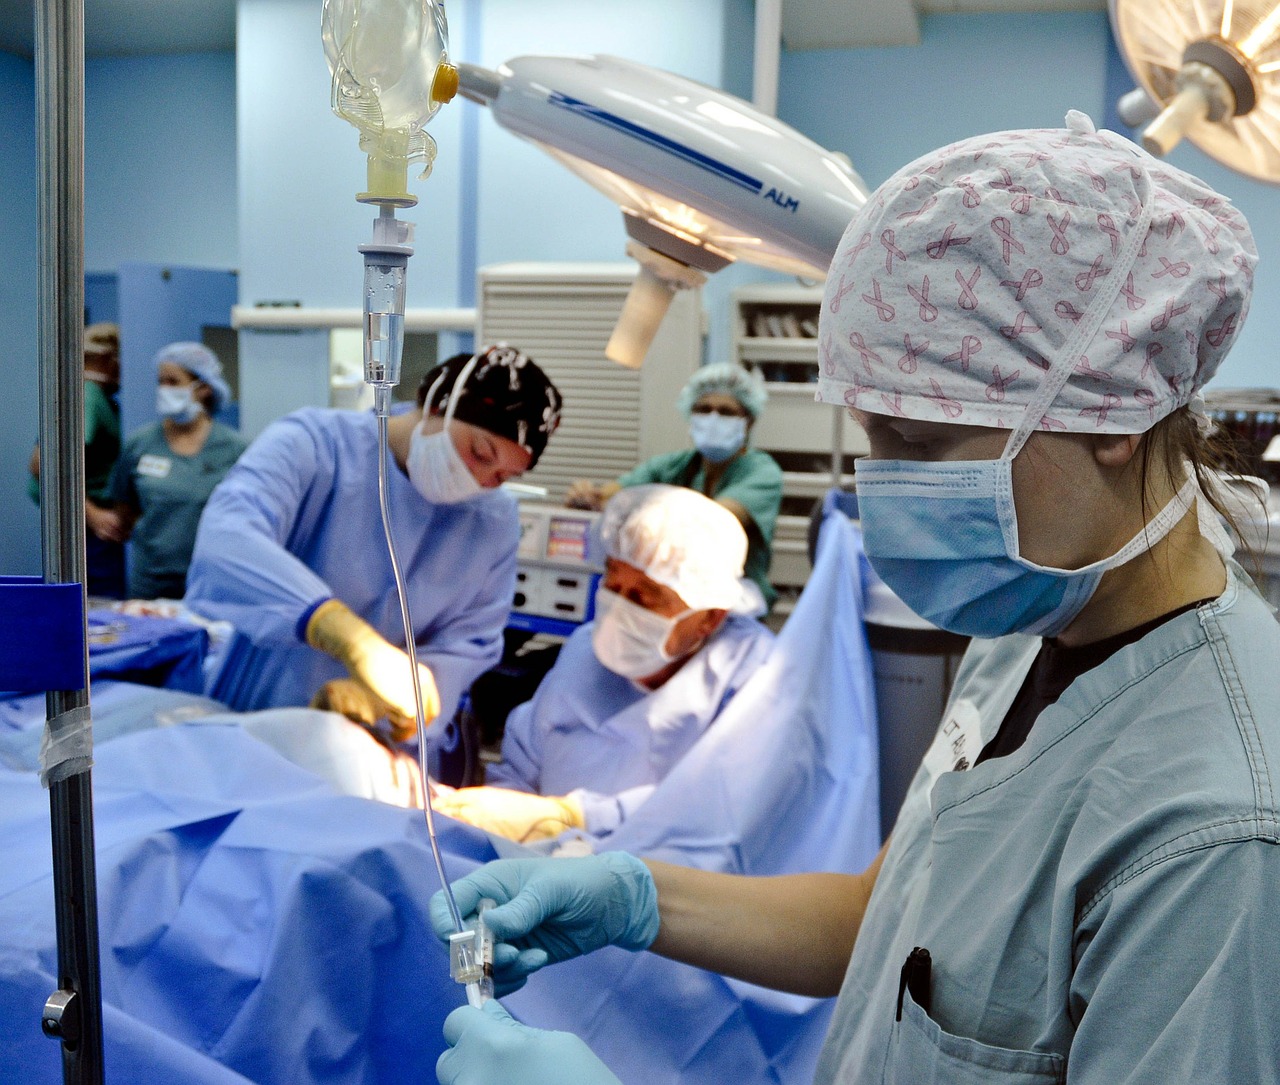    Сколько стоит операция по удаления миндалин в Турции? 